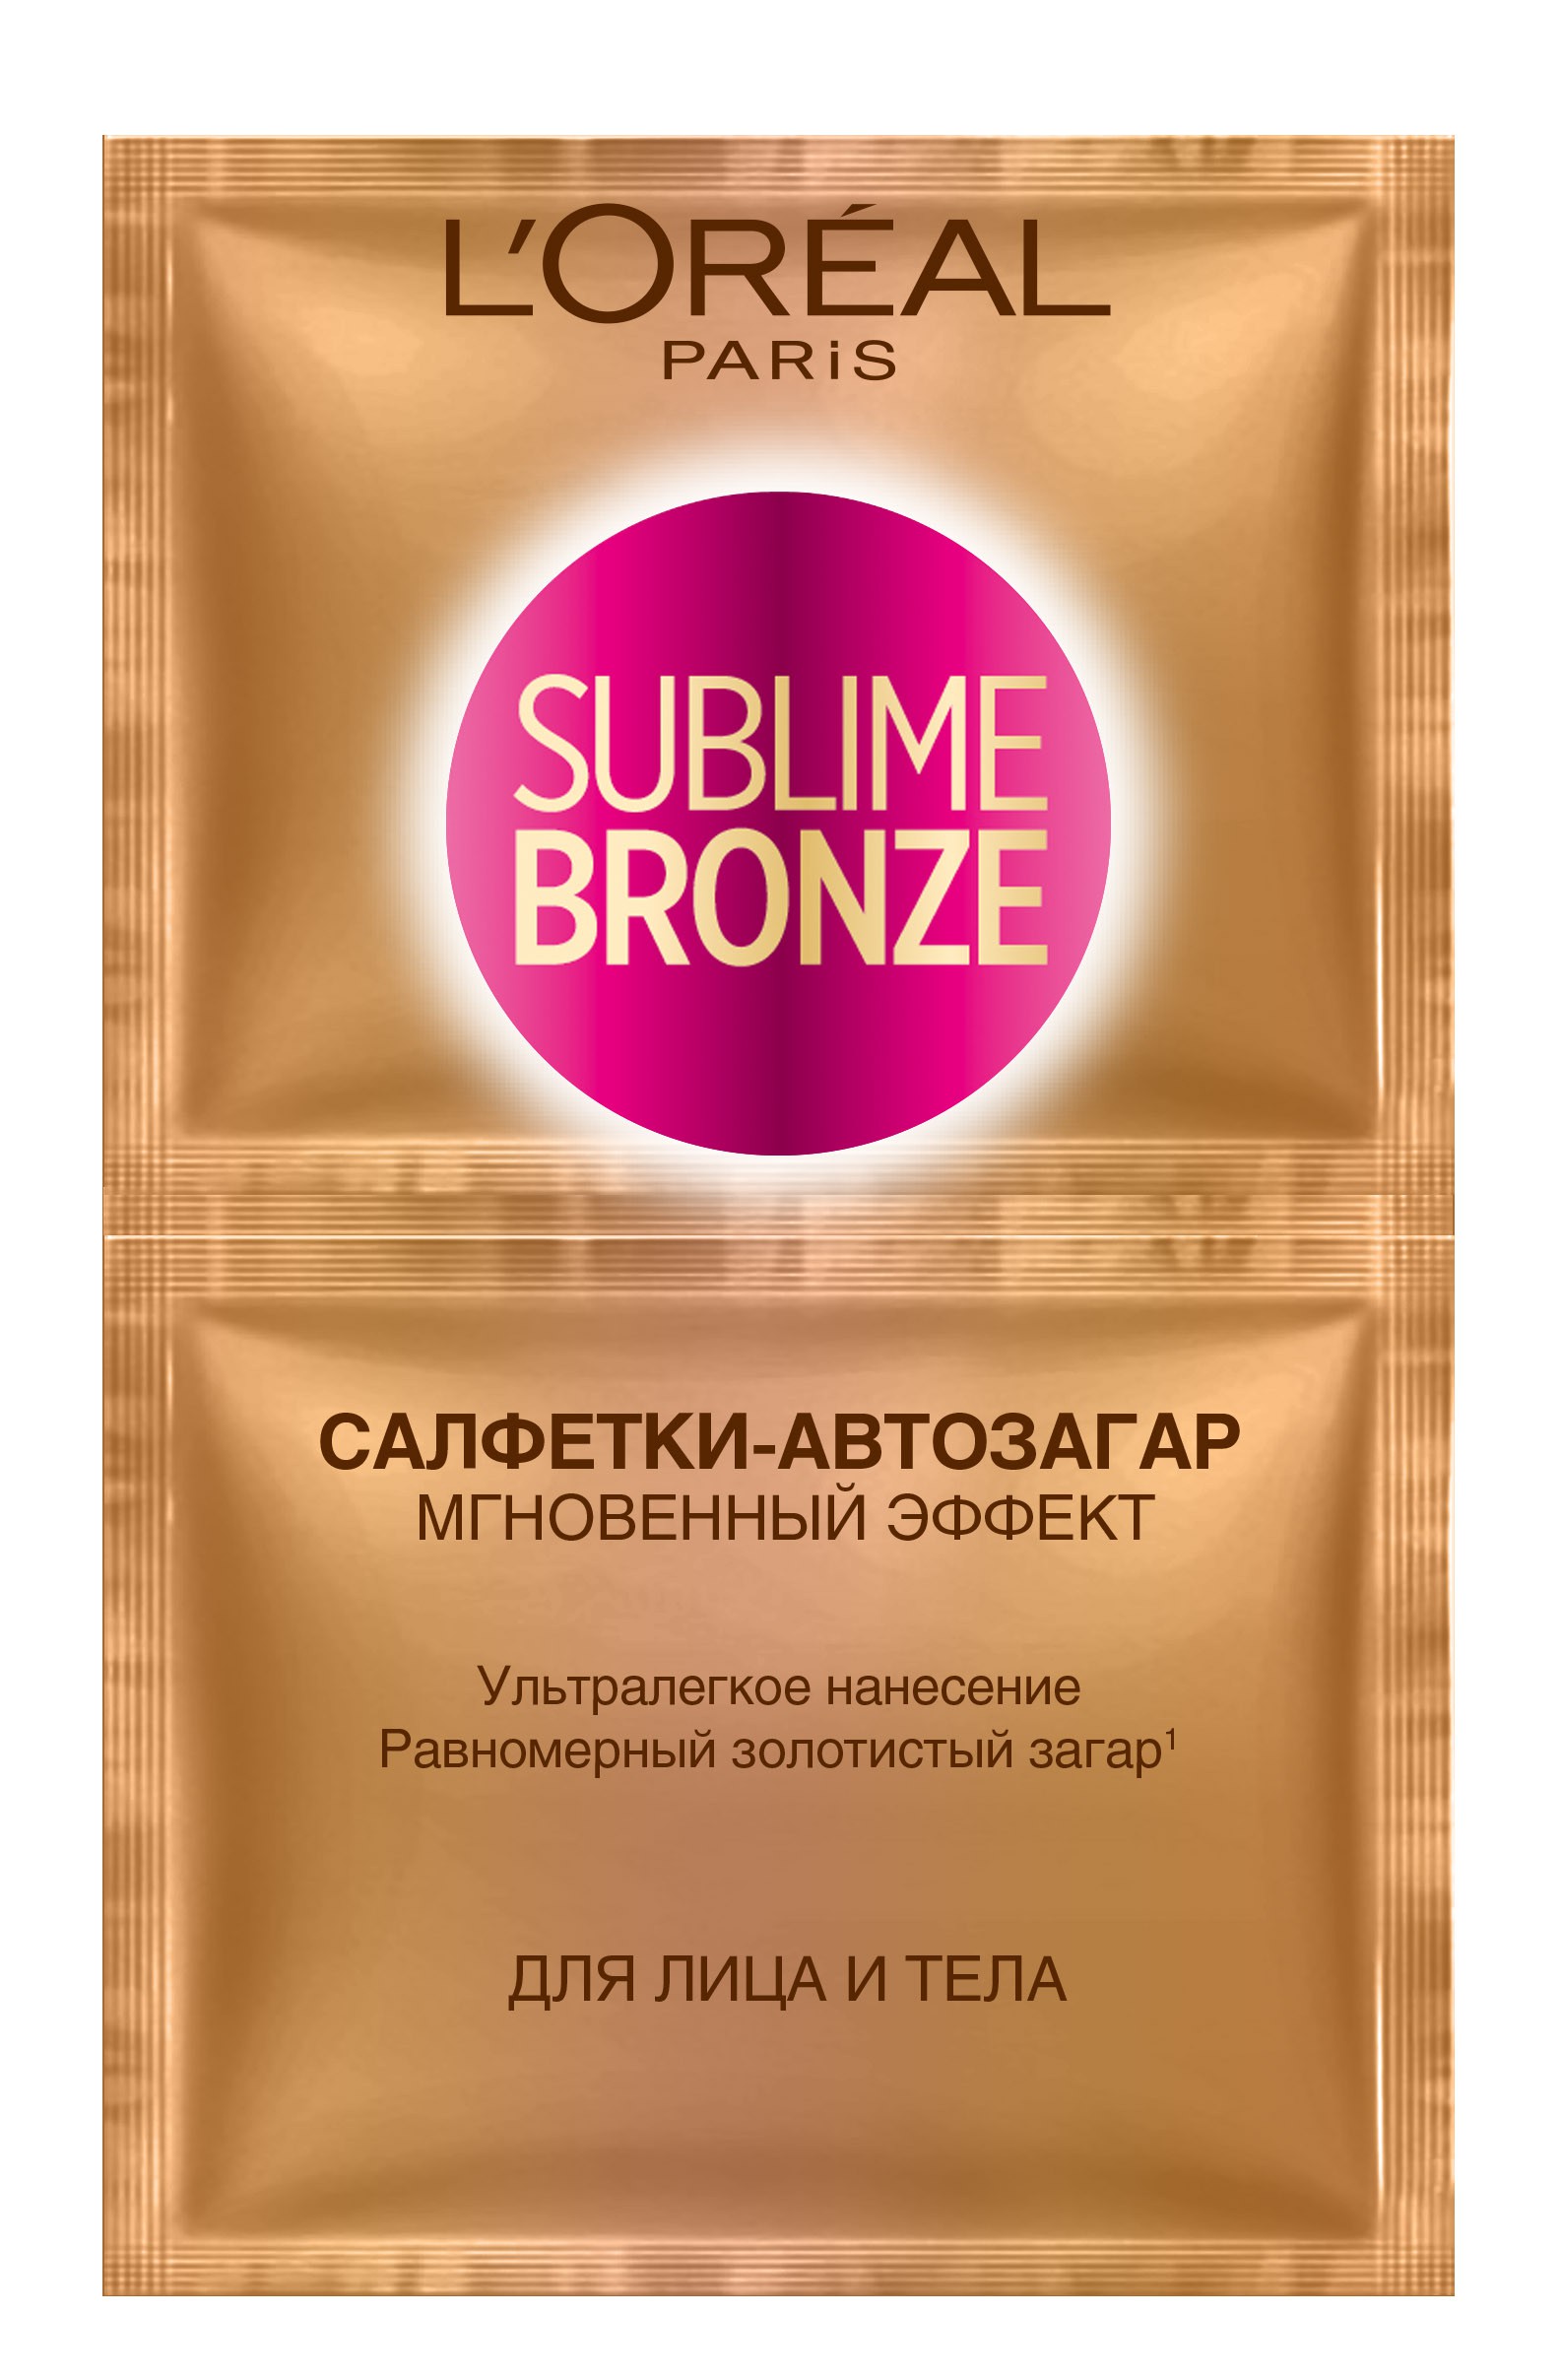 купить L'Oreal Paris Sublime Bronze Салфетки-автозагар, для лица и тела, 2 х 5,6 мл - заказ и доставка в Москве и Санкт-Петербурге